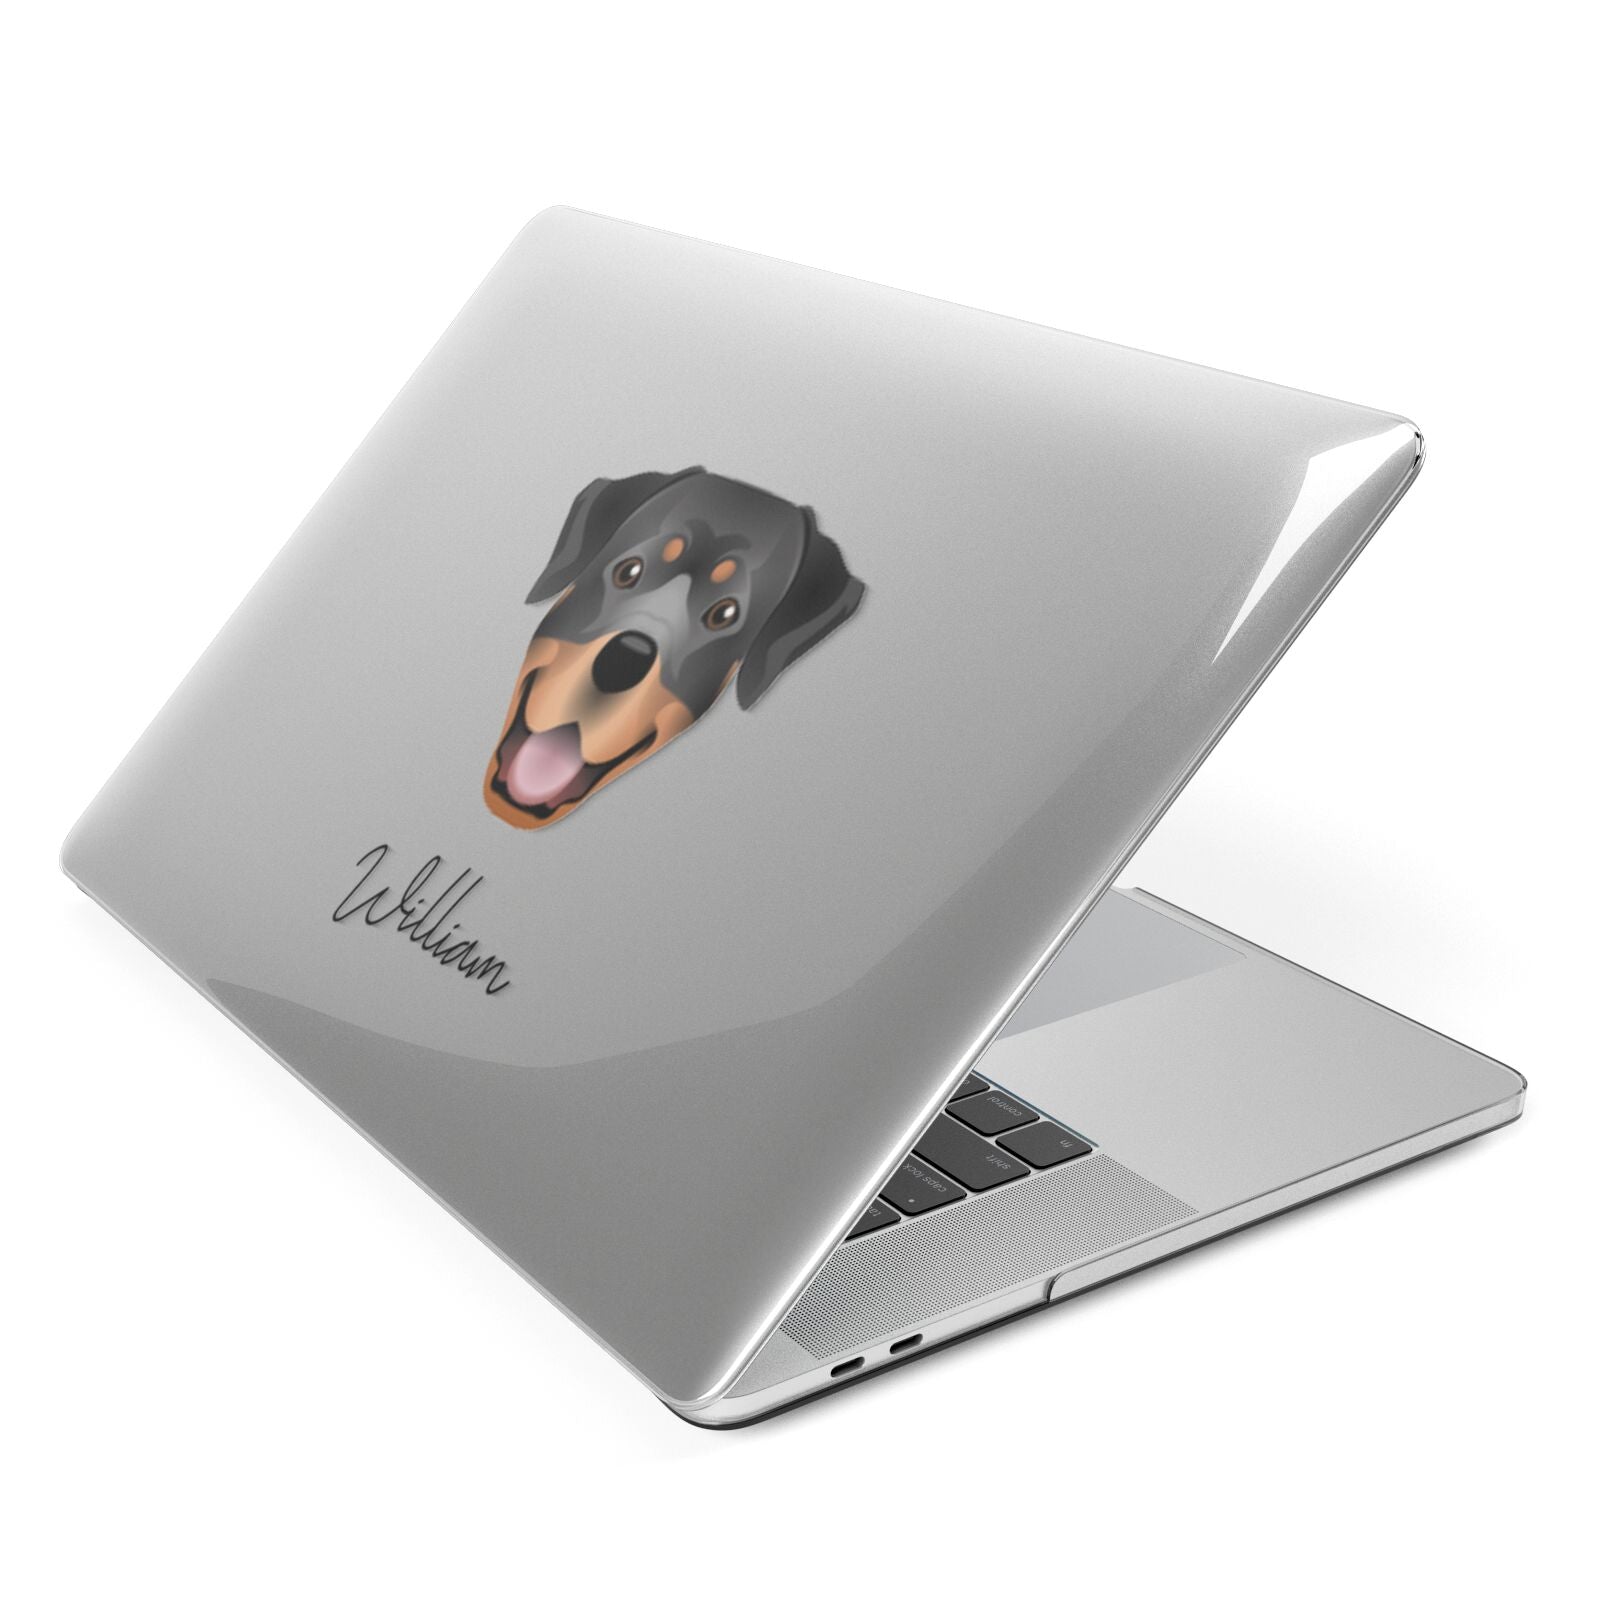 Rottweiler Personalised Apple MacBook Case Side View